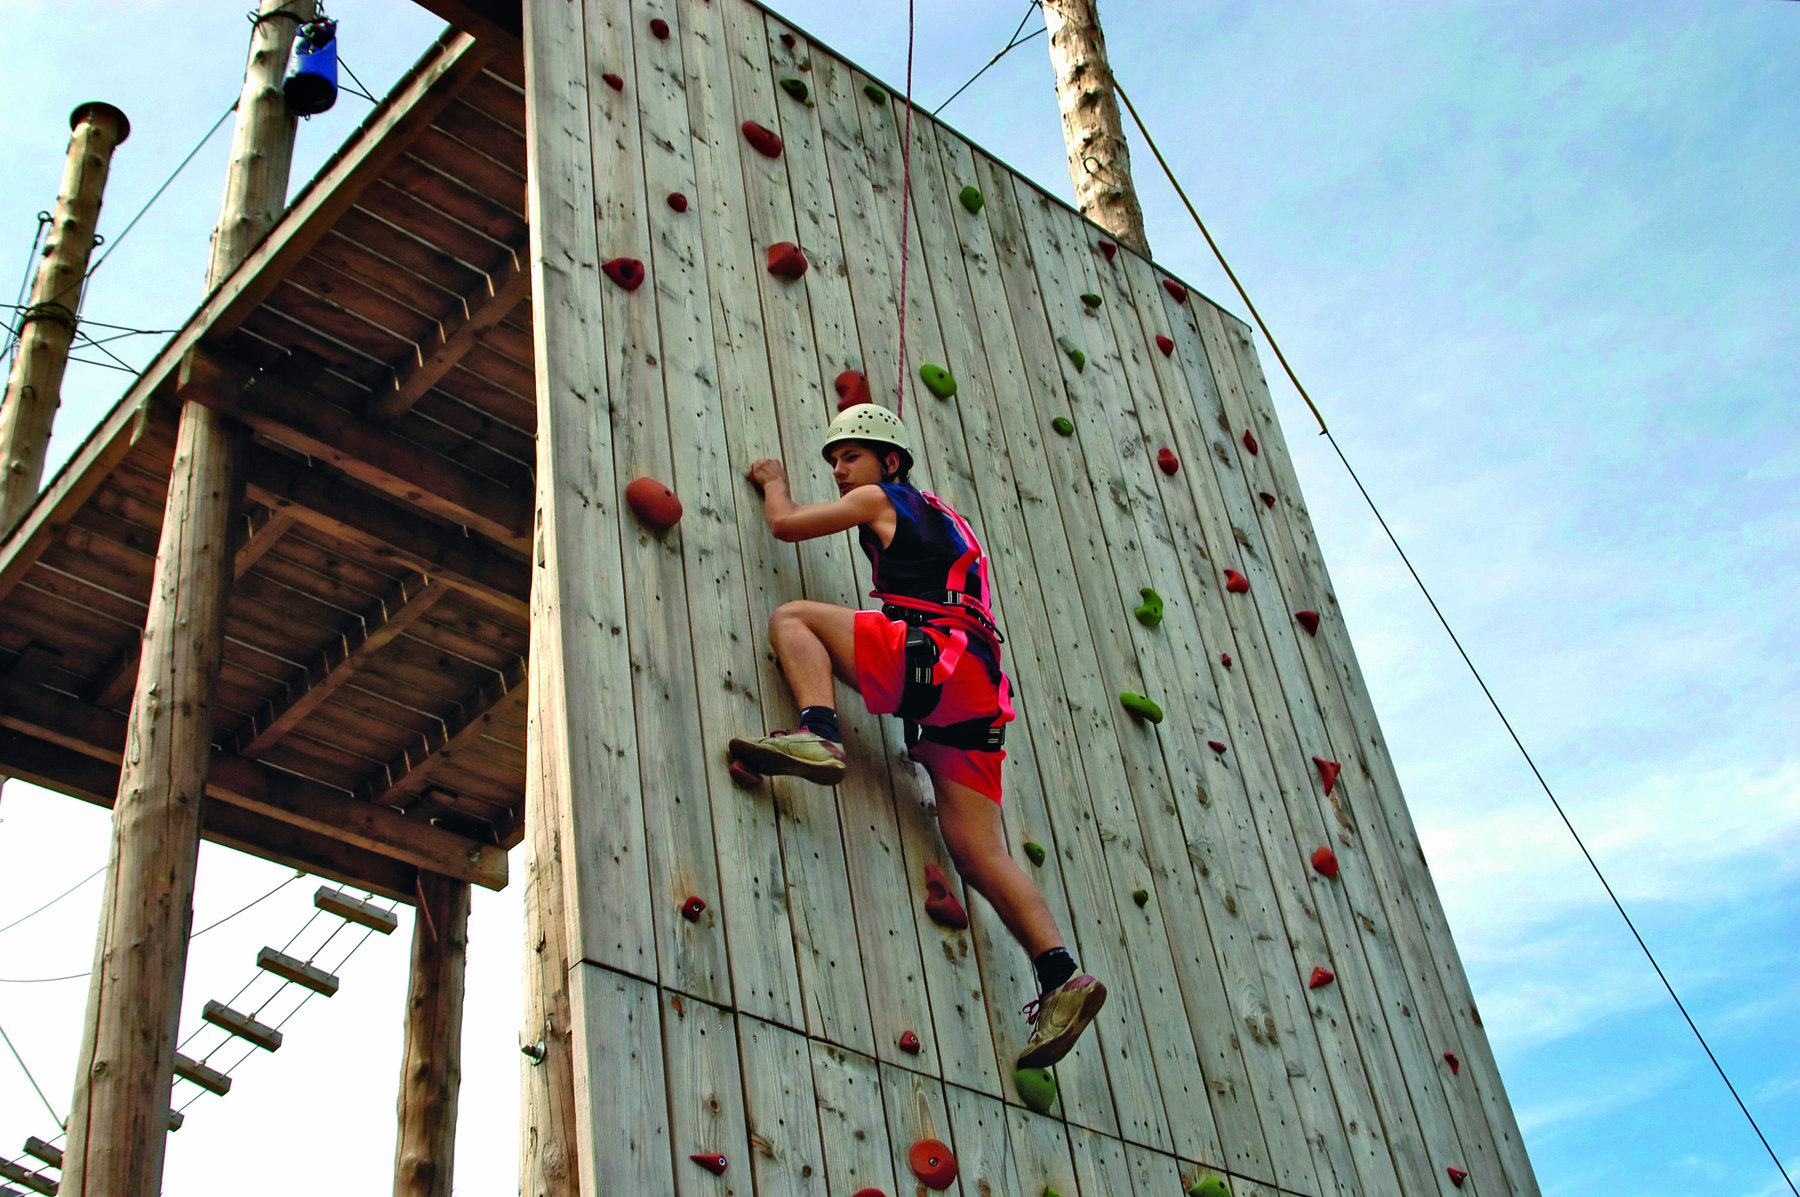 Fotografia. Rapaz de camiseta, bermuda e capacete escalando uma parede. Ele está preso a uma corda e se agarra a pontos de apoio fixados na parede.